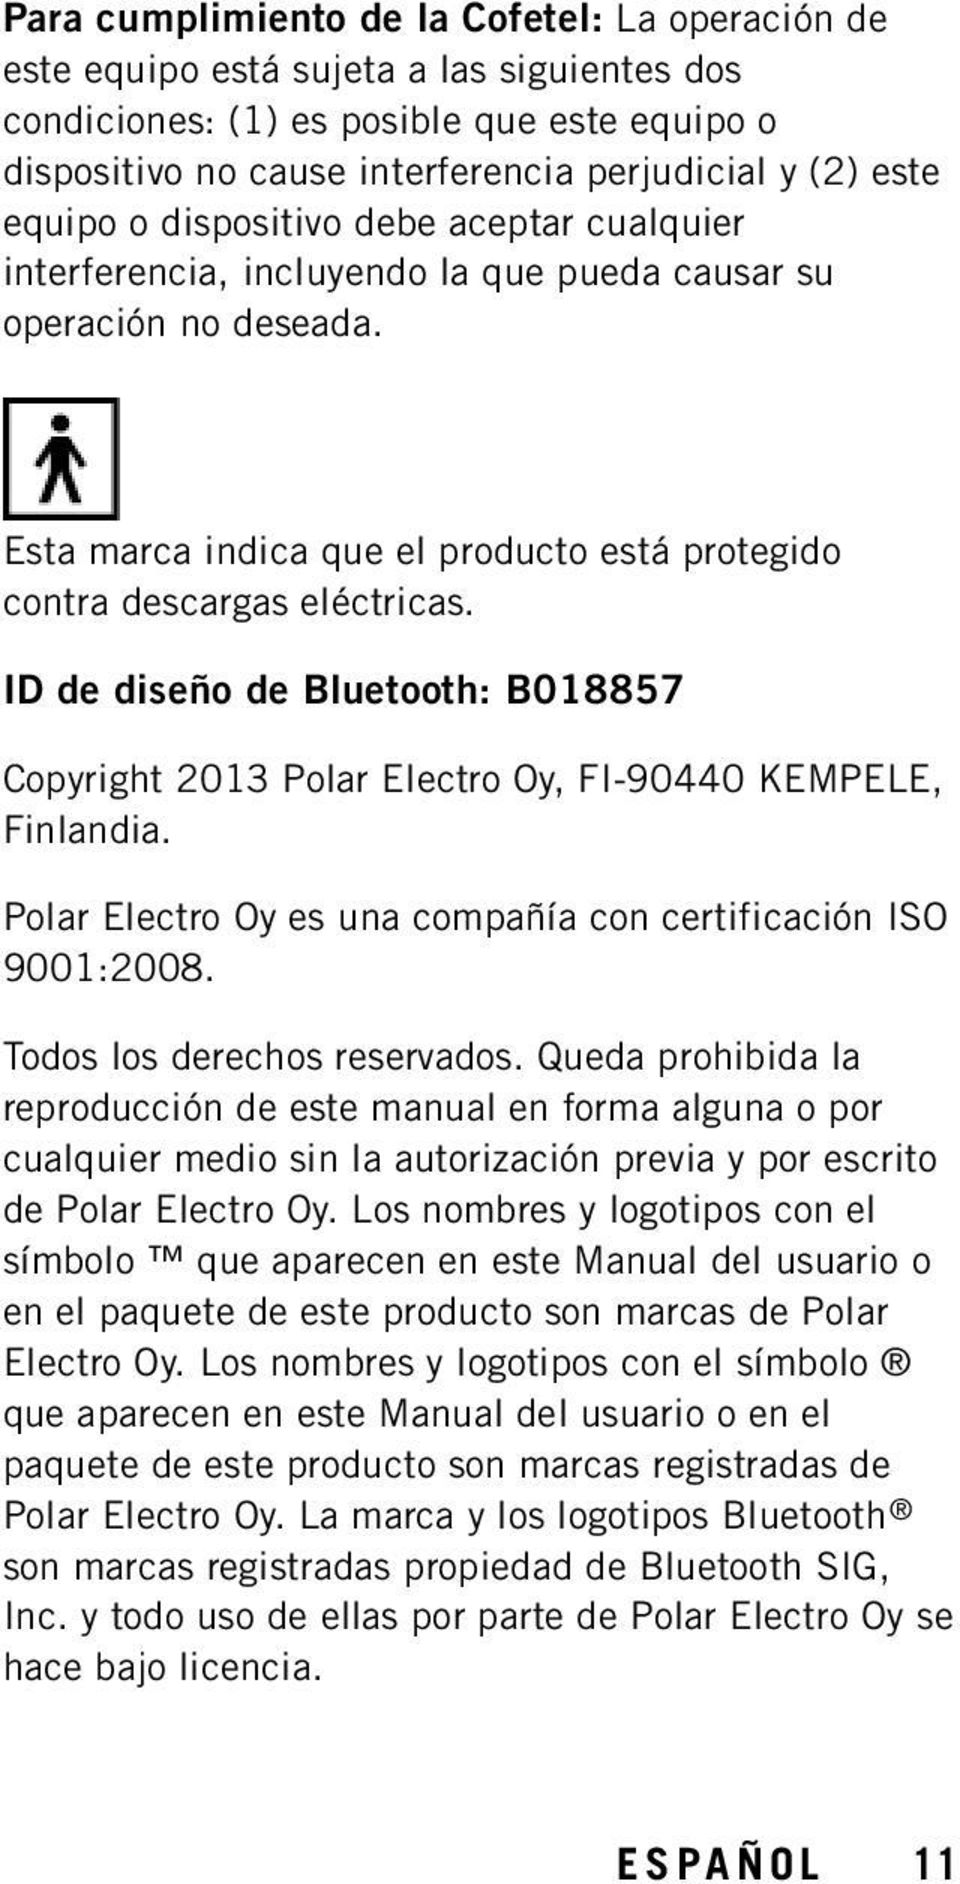 ID de diseño de Bluetooth: B018857 Copyright 2013 Polar Electro Oy, FI-90440 KEMPELE, Finlandia. Polar Electro Oy es una compañía con certificación ISO 9001:2008. Todos los derechos reservados.